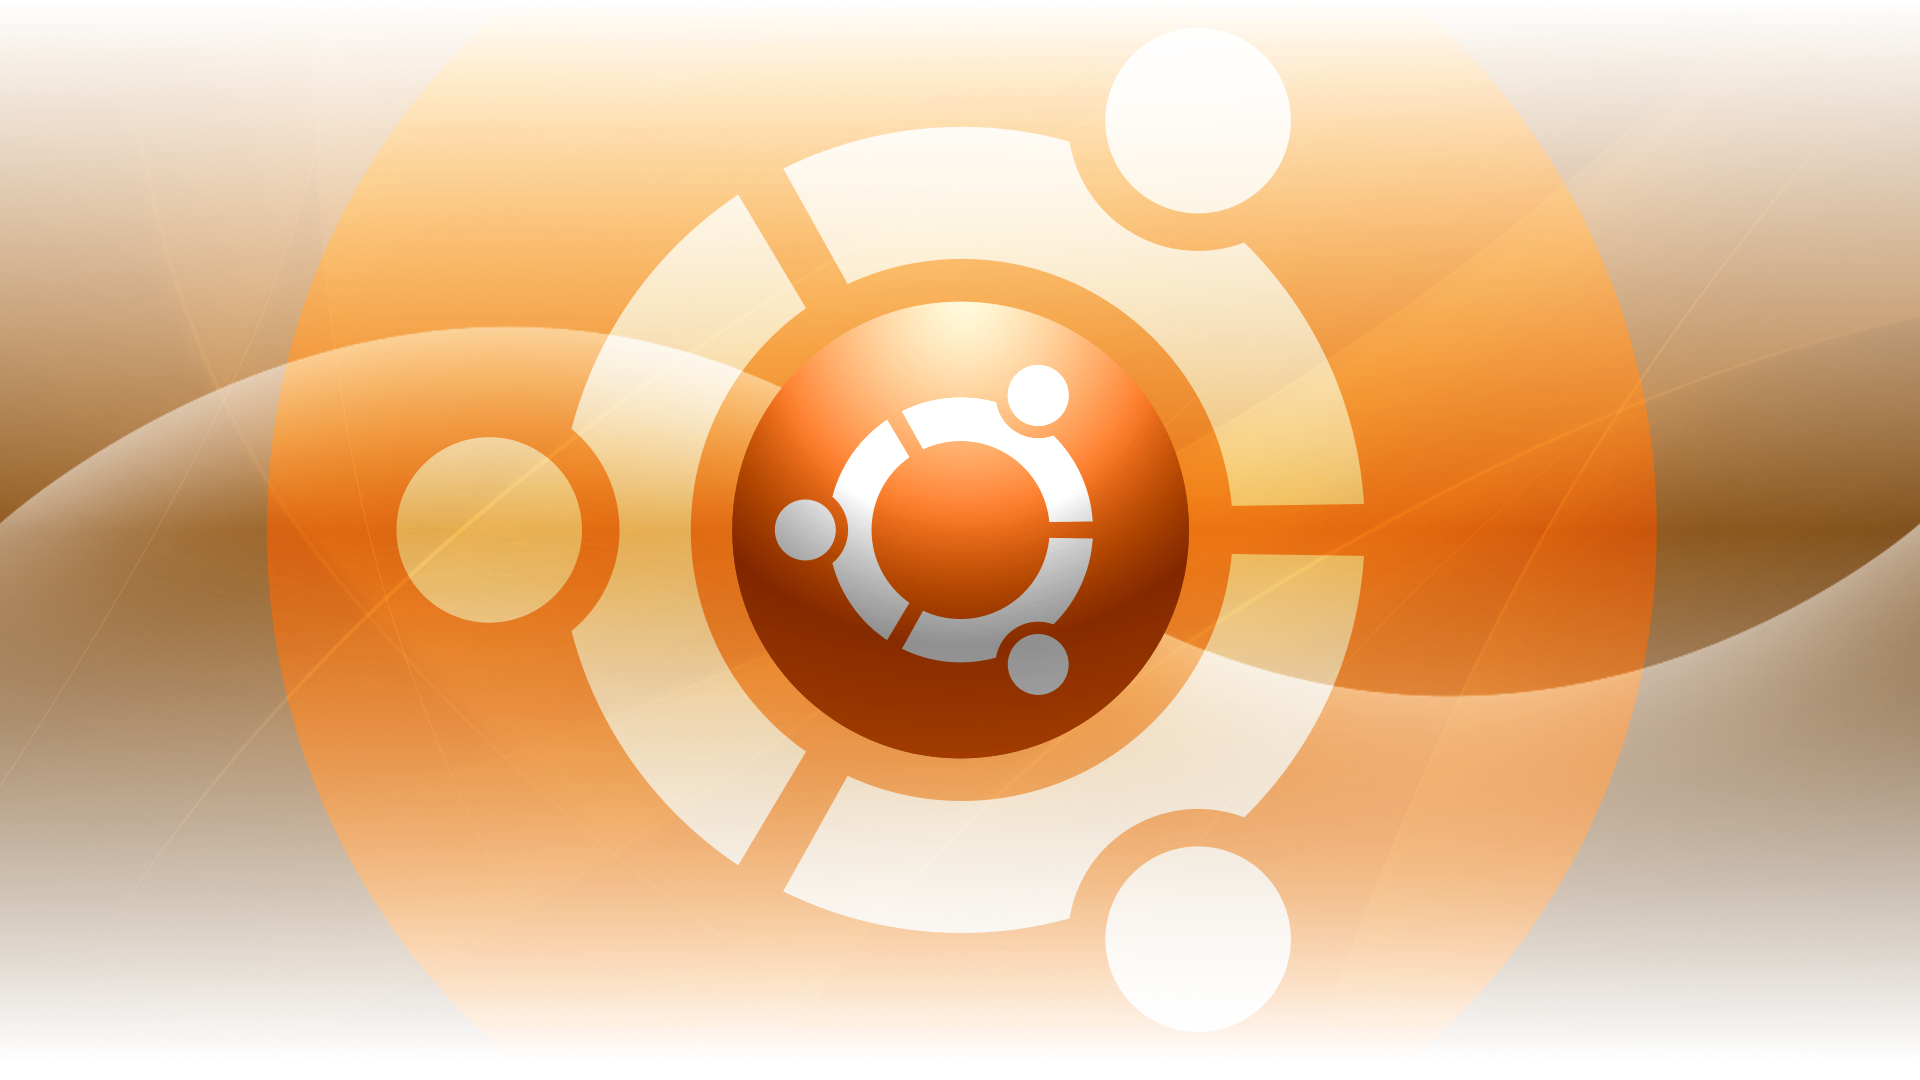 Ubuntu Wallpaper For Desktop And Laptops